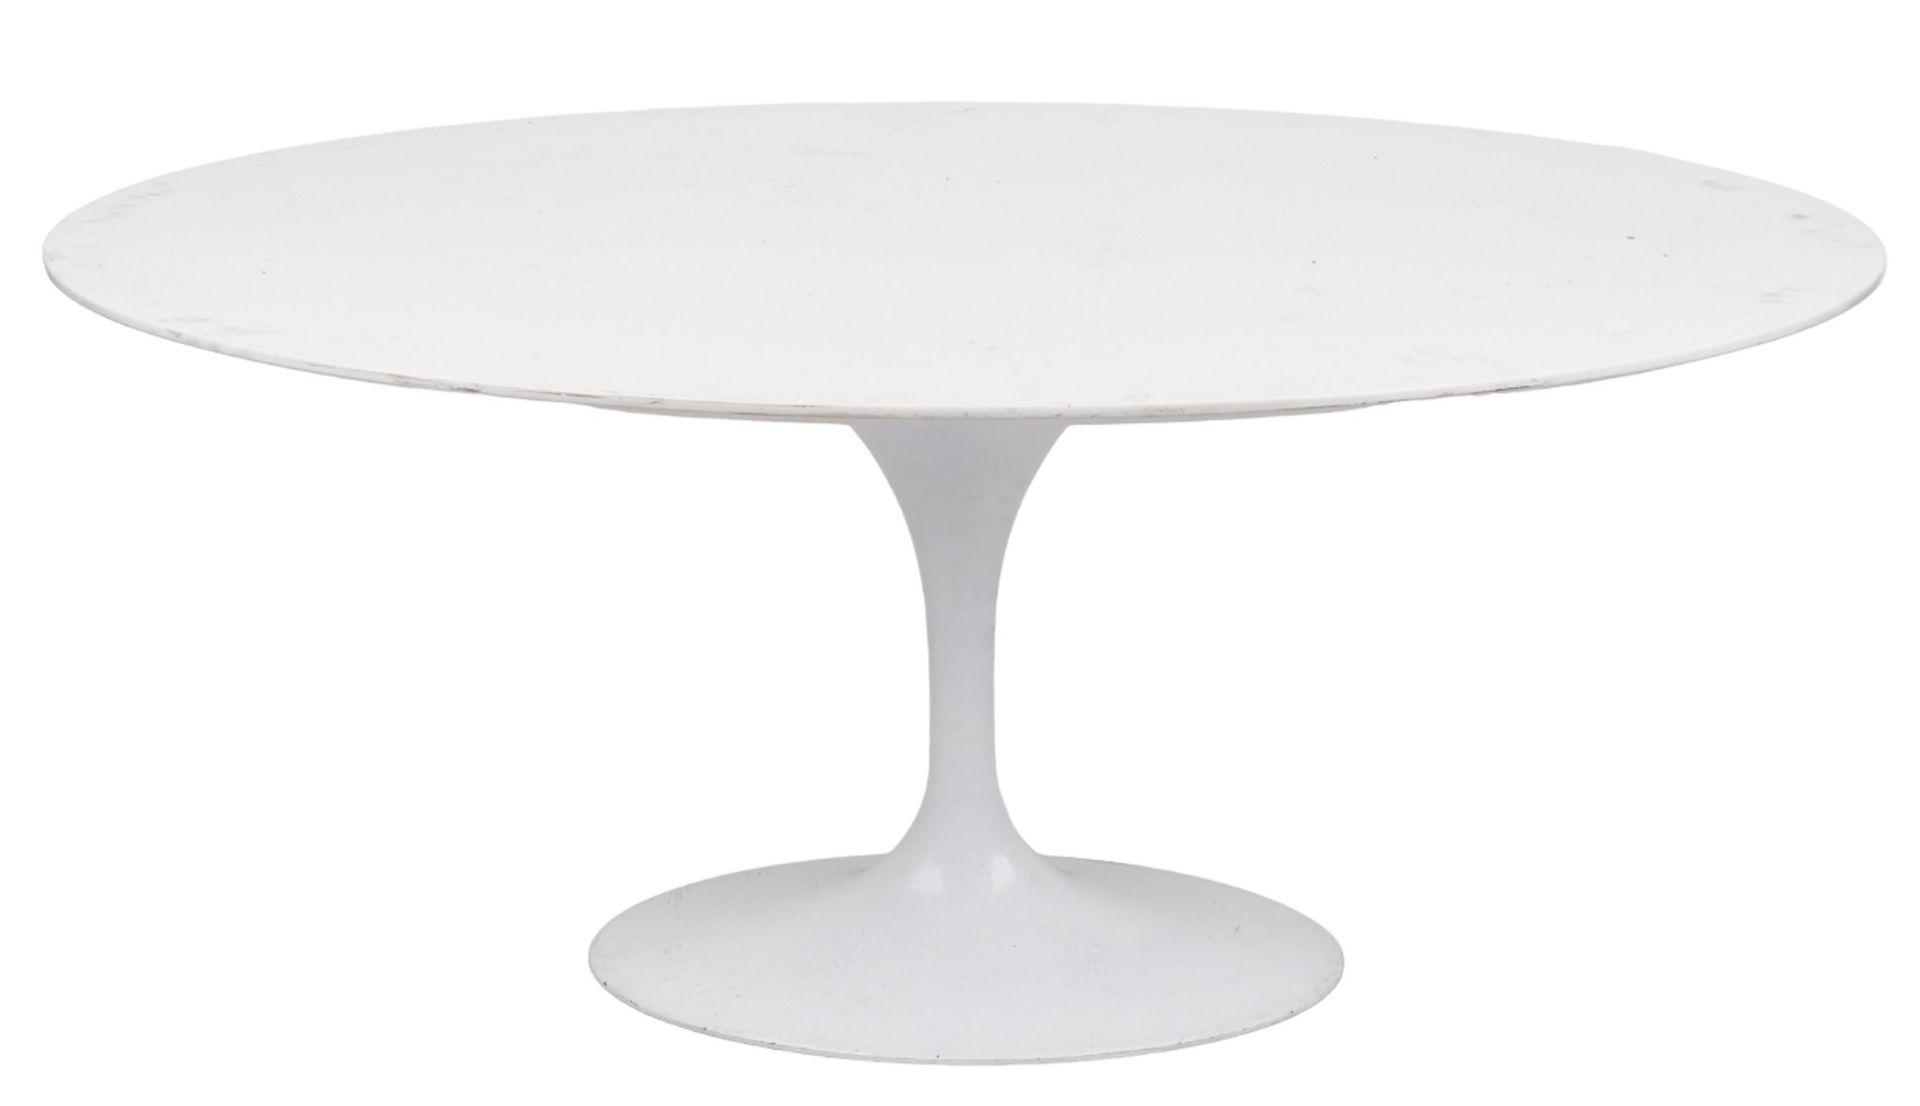 Eero Saarinen design contemporary tulip dining table, 75cm H x 170cm W x 110cm D - Bild 3 aus 3